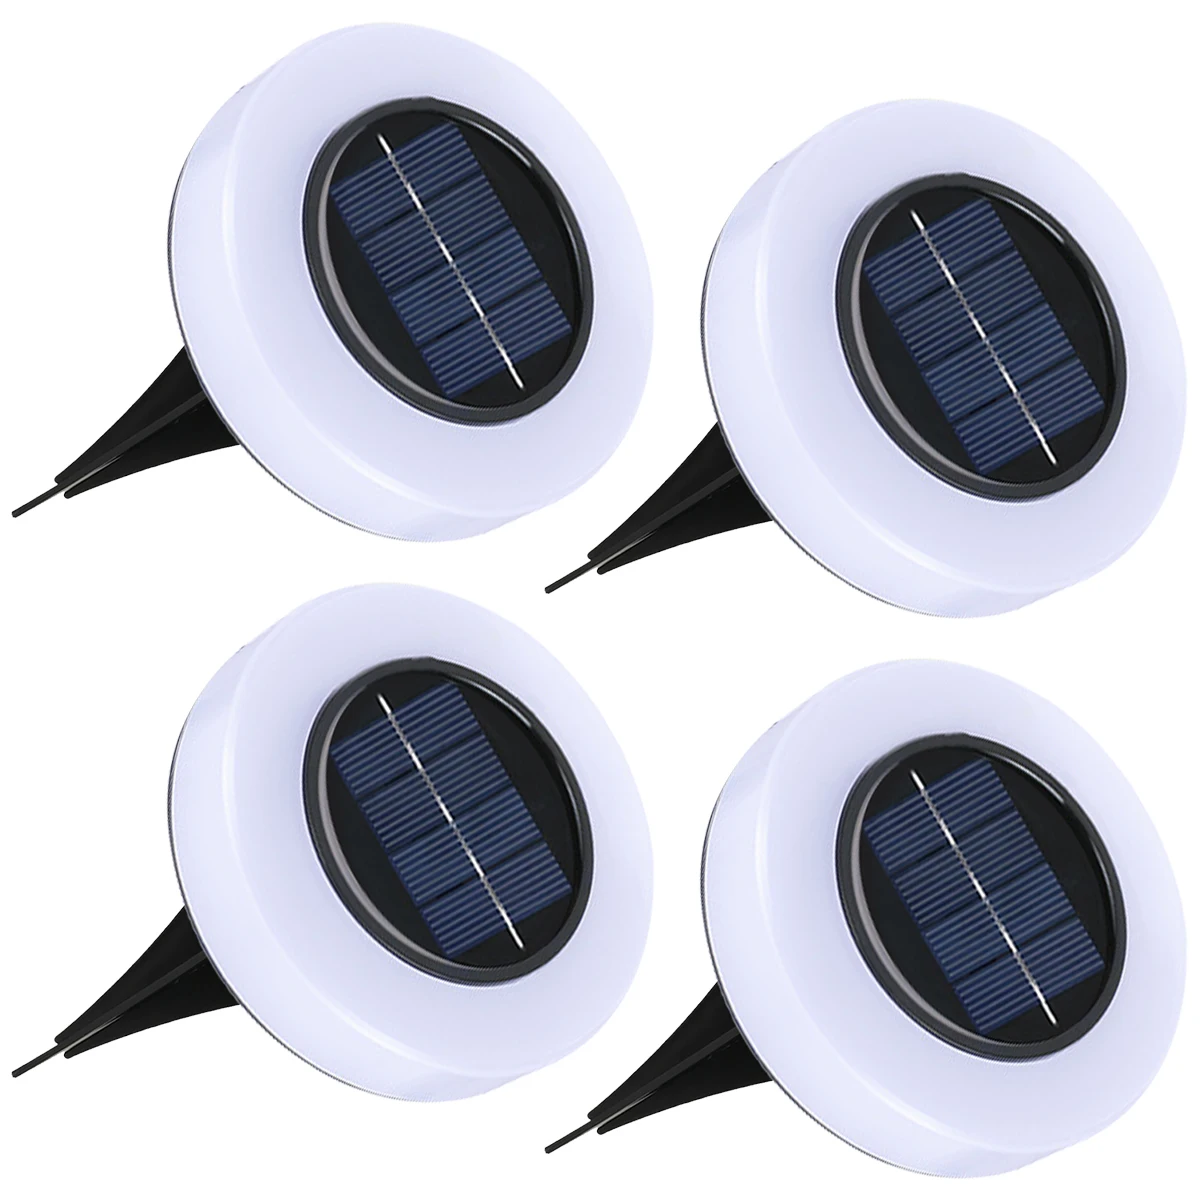 Güneş led ışık 4 adet Güneş zemin aydınlatması 8 LEDs ile Açık güneş enerjili disk ışığı Otomatik AÇIK / KAPALI Güneş Gömülü Lamba IP65 Su Geçirmez Güneş 1